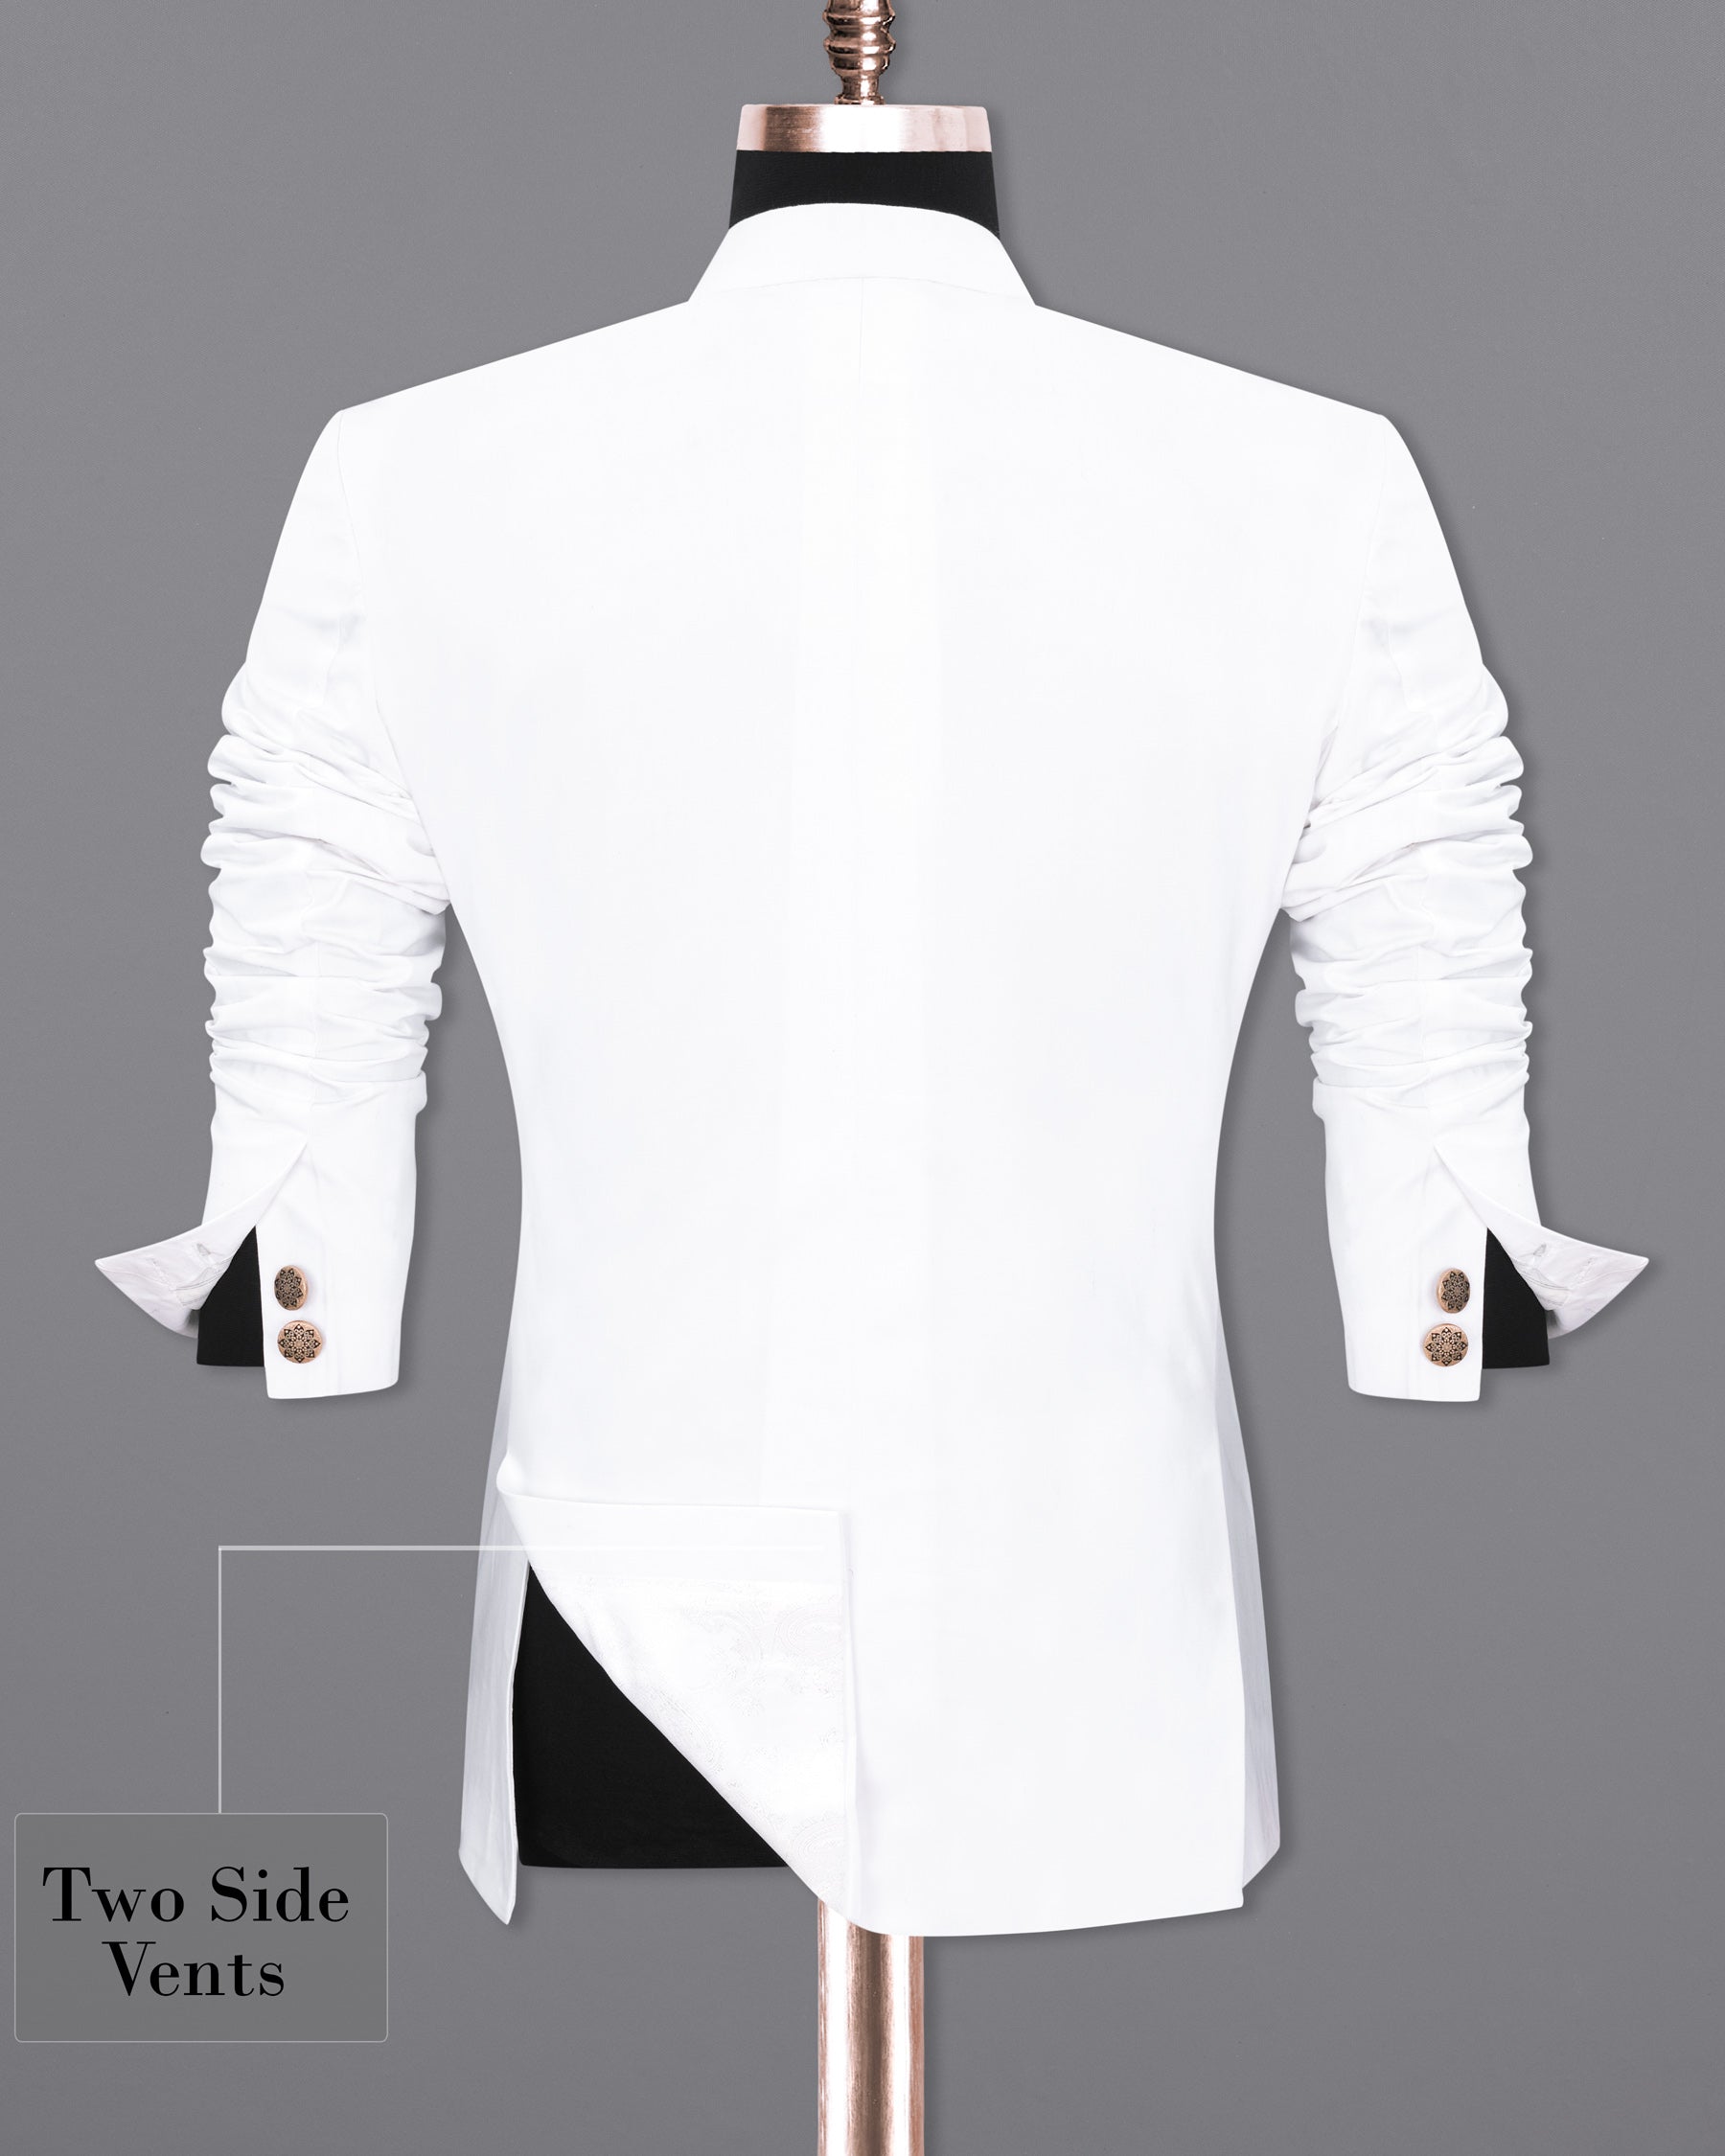 Bright White Cross Buttoned Bandhgala Premium Cotton Designer Suits ST1906-CBG-D44-36, ST1906-CBG-D44-38, ST1906-CBG-D44-40, ST1906-CBG-D44-42, ST1906-CBG-D44-44, ST1906-CBG-D44-46, ST1906-CBG-D44-48, ST1906-CBG-D44-50, ST1906-CBG-D44-52, ST1906-CBG-D44-54, ST1906-CBG-D44-56, ST1906-CBG-D44-58, ST1906-CBG-D44-60